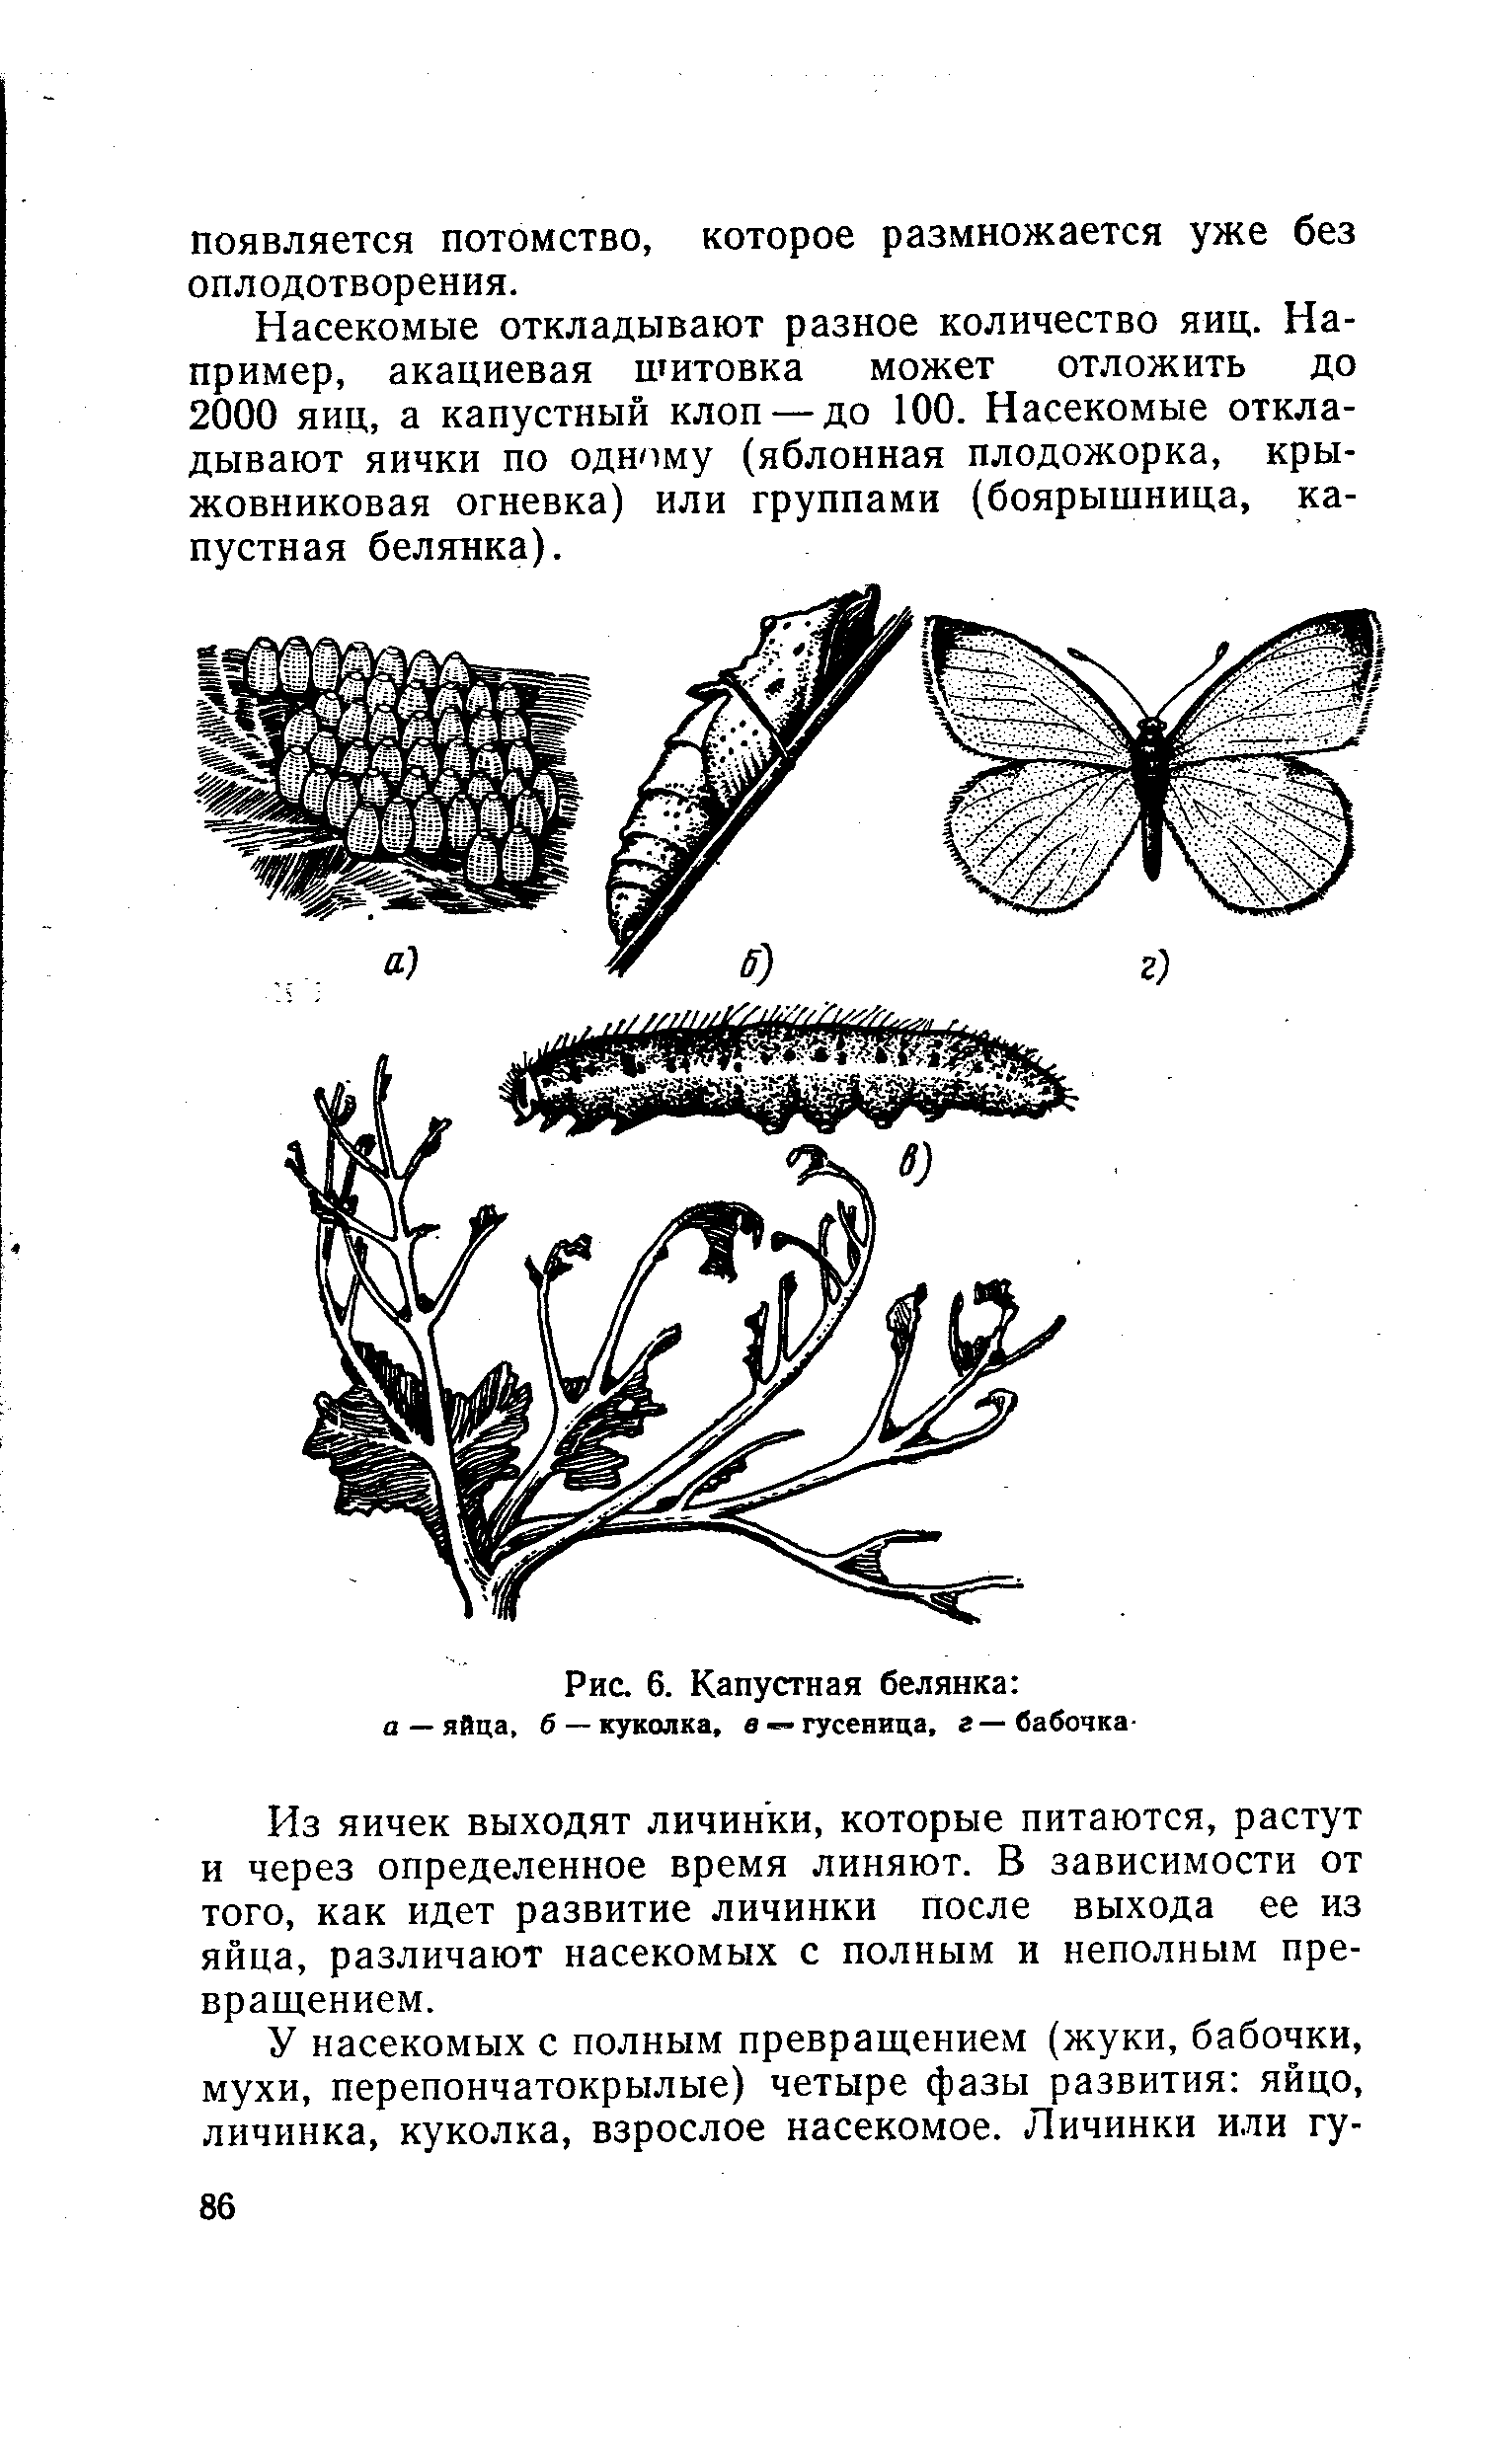 Последовательность капустной белянки